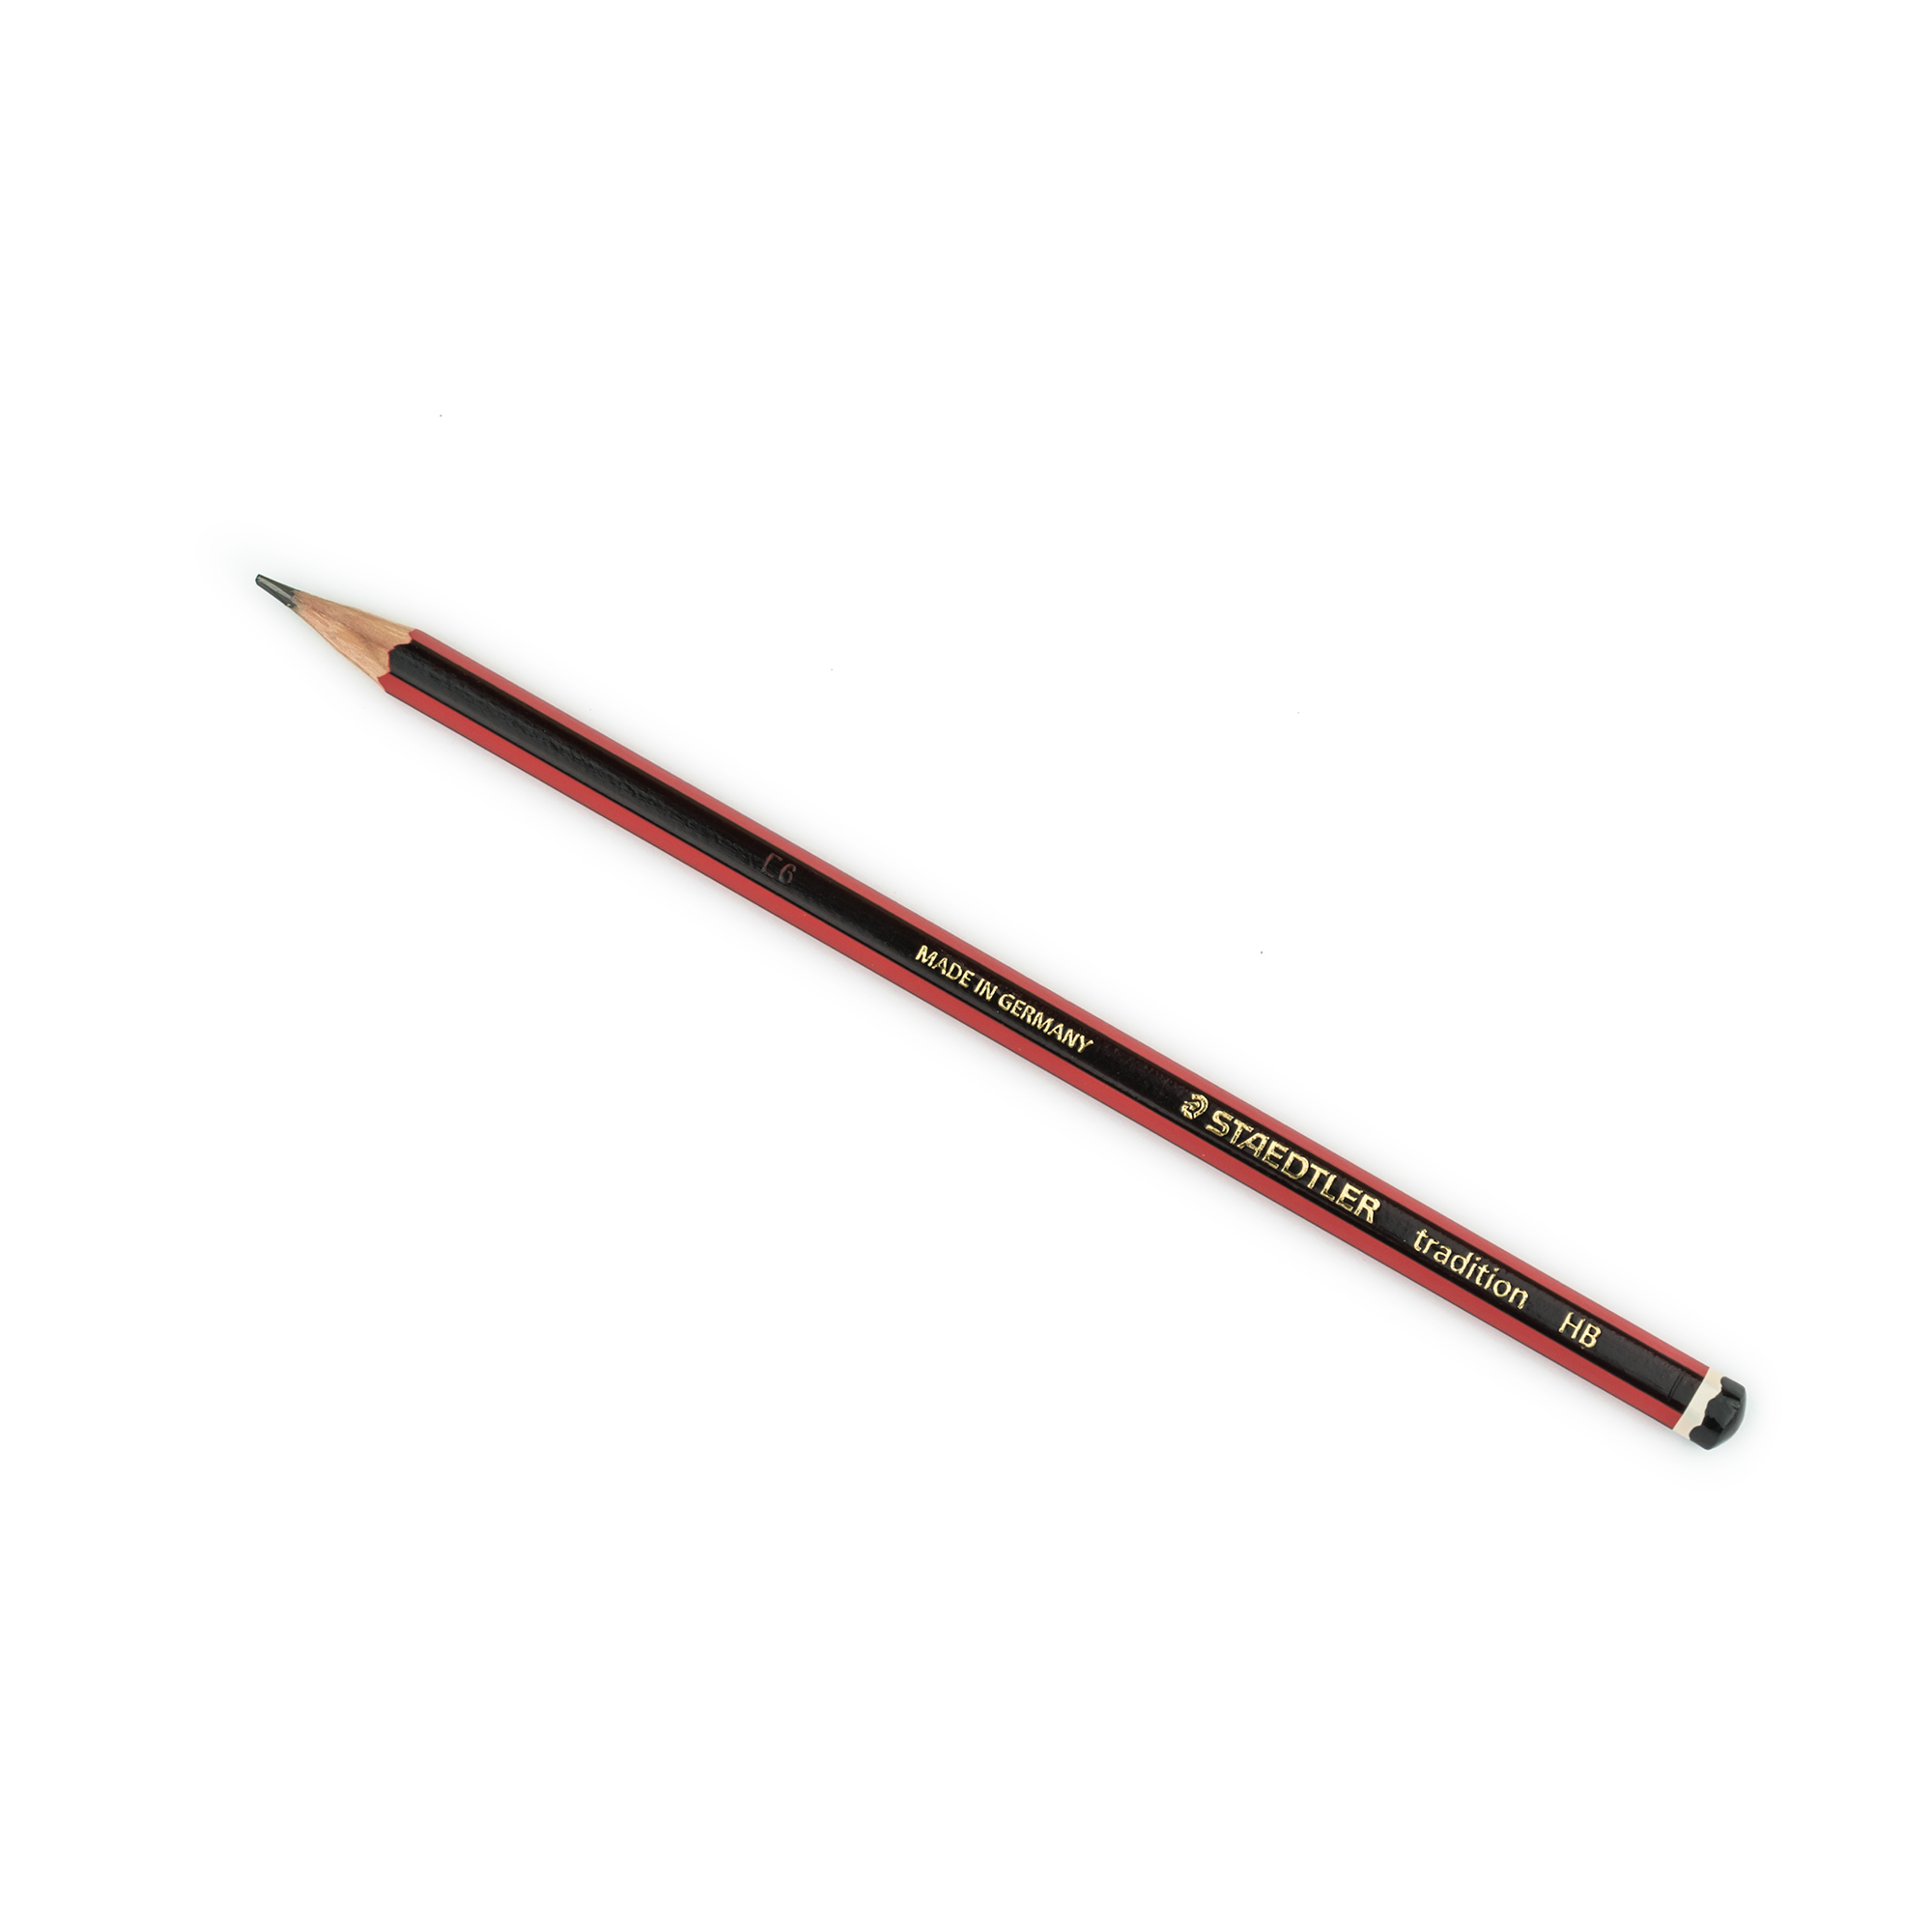 Staedtler Tradition 110 HB pencil – Scribe Market